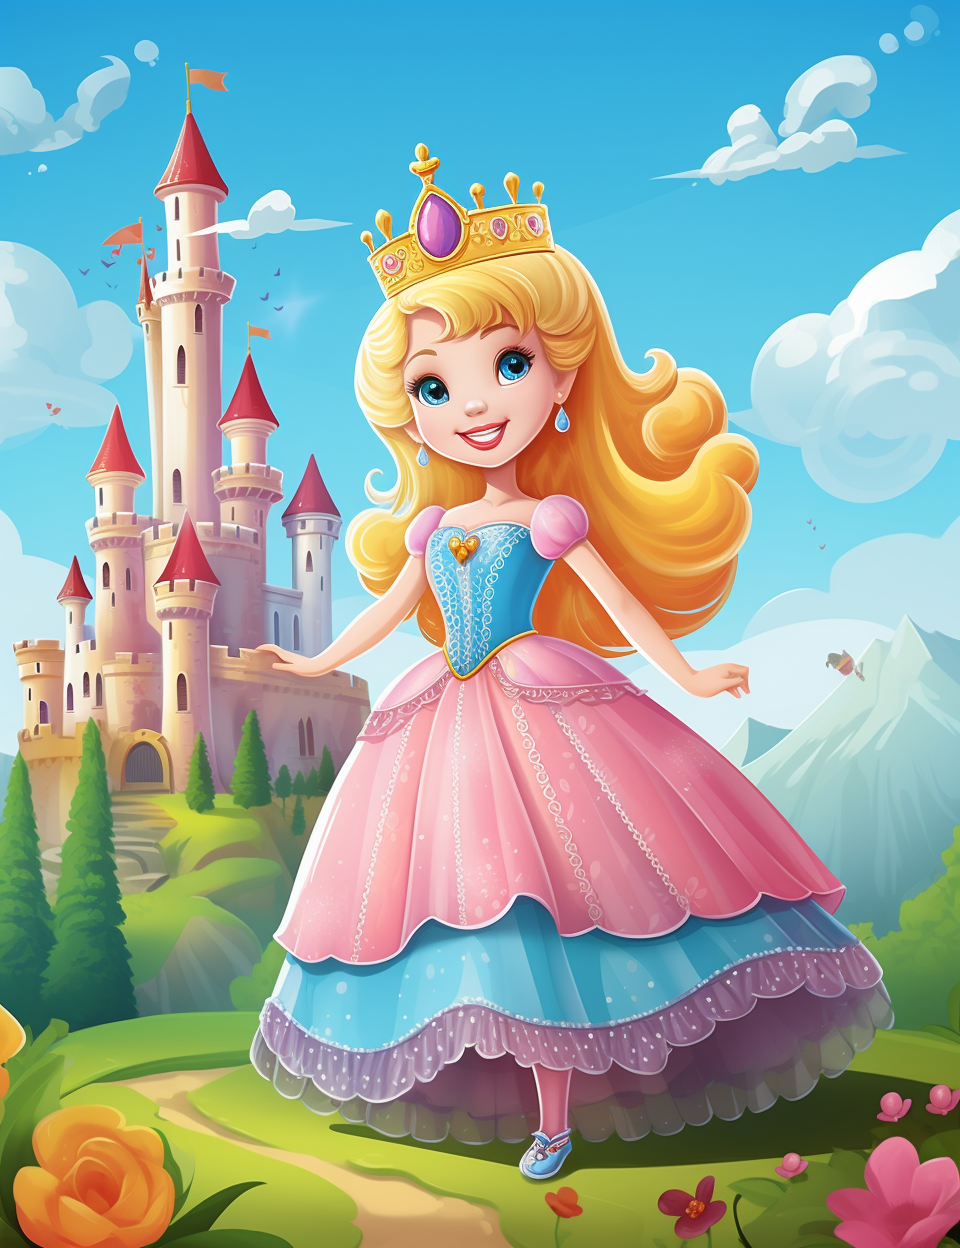 Prinsessedrøm | 90 sider med fargeleggingsark av vakre prinsesser | PDF utskrivbare sider